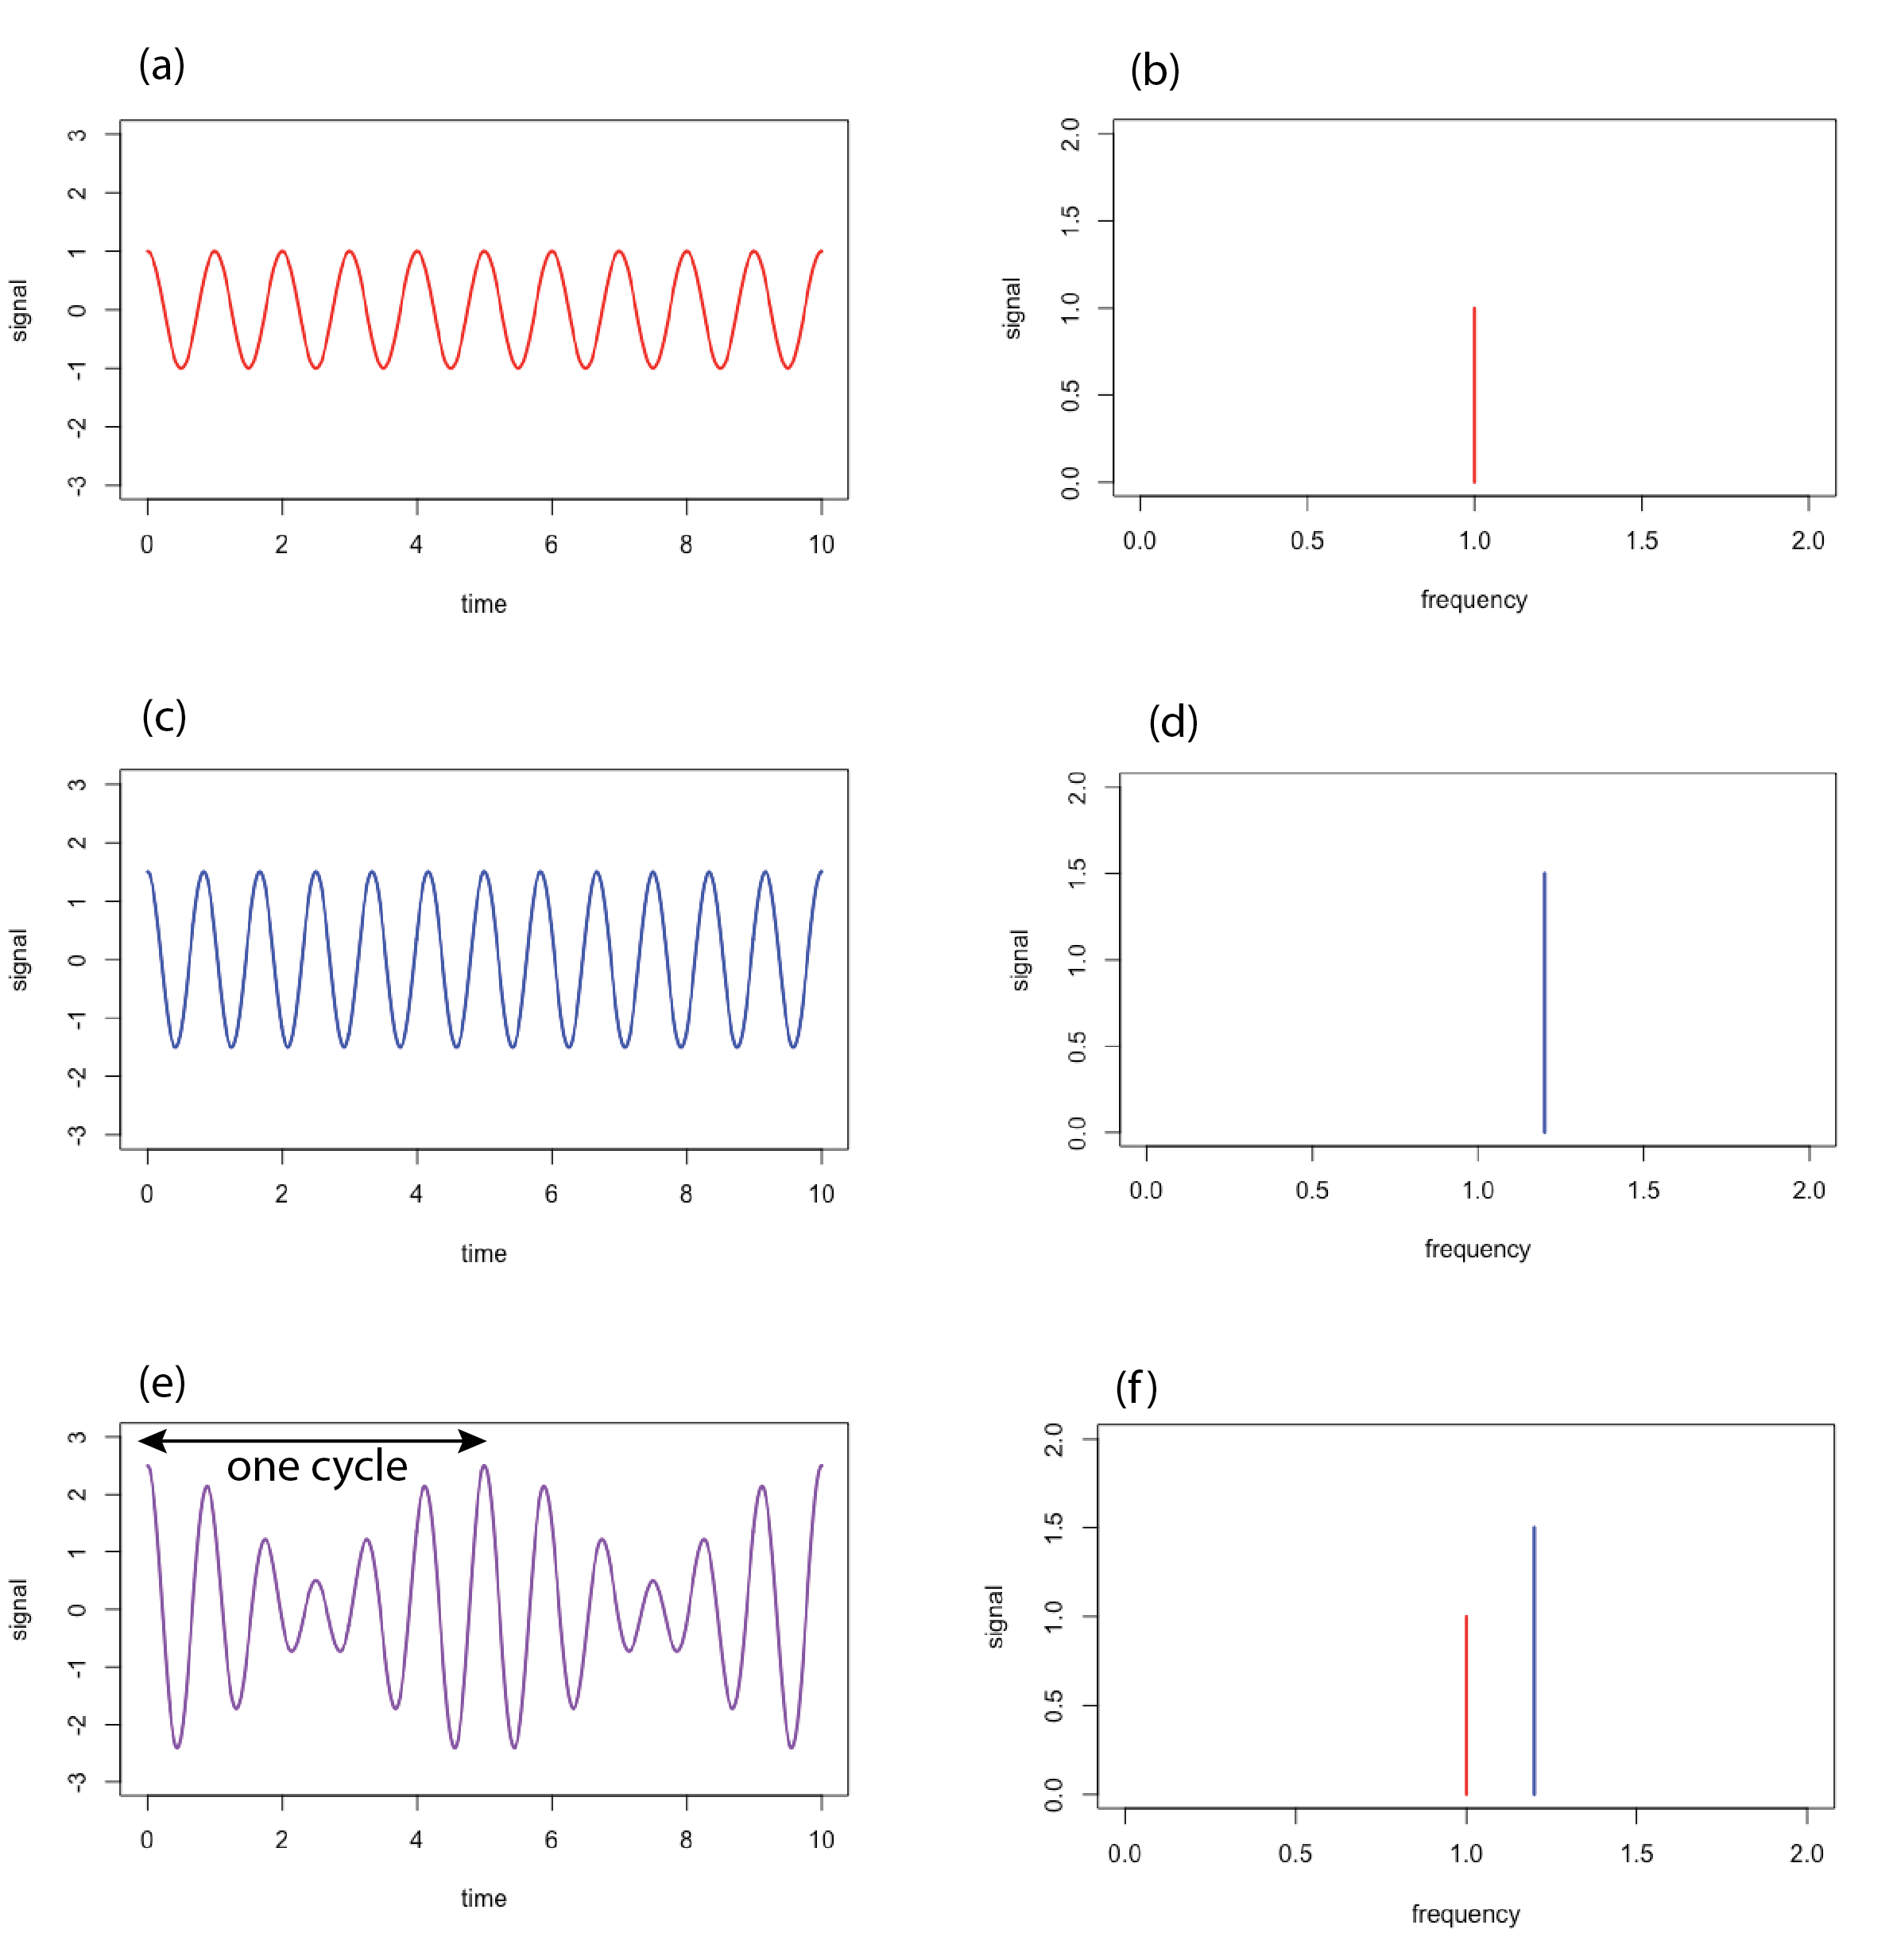 Espectros de dominio de tiempo y dominio de frecuencia para fuentes monocromáticas y policromáticas.